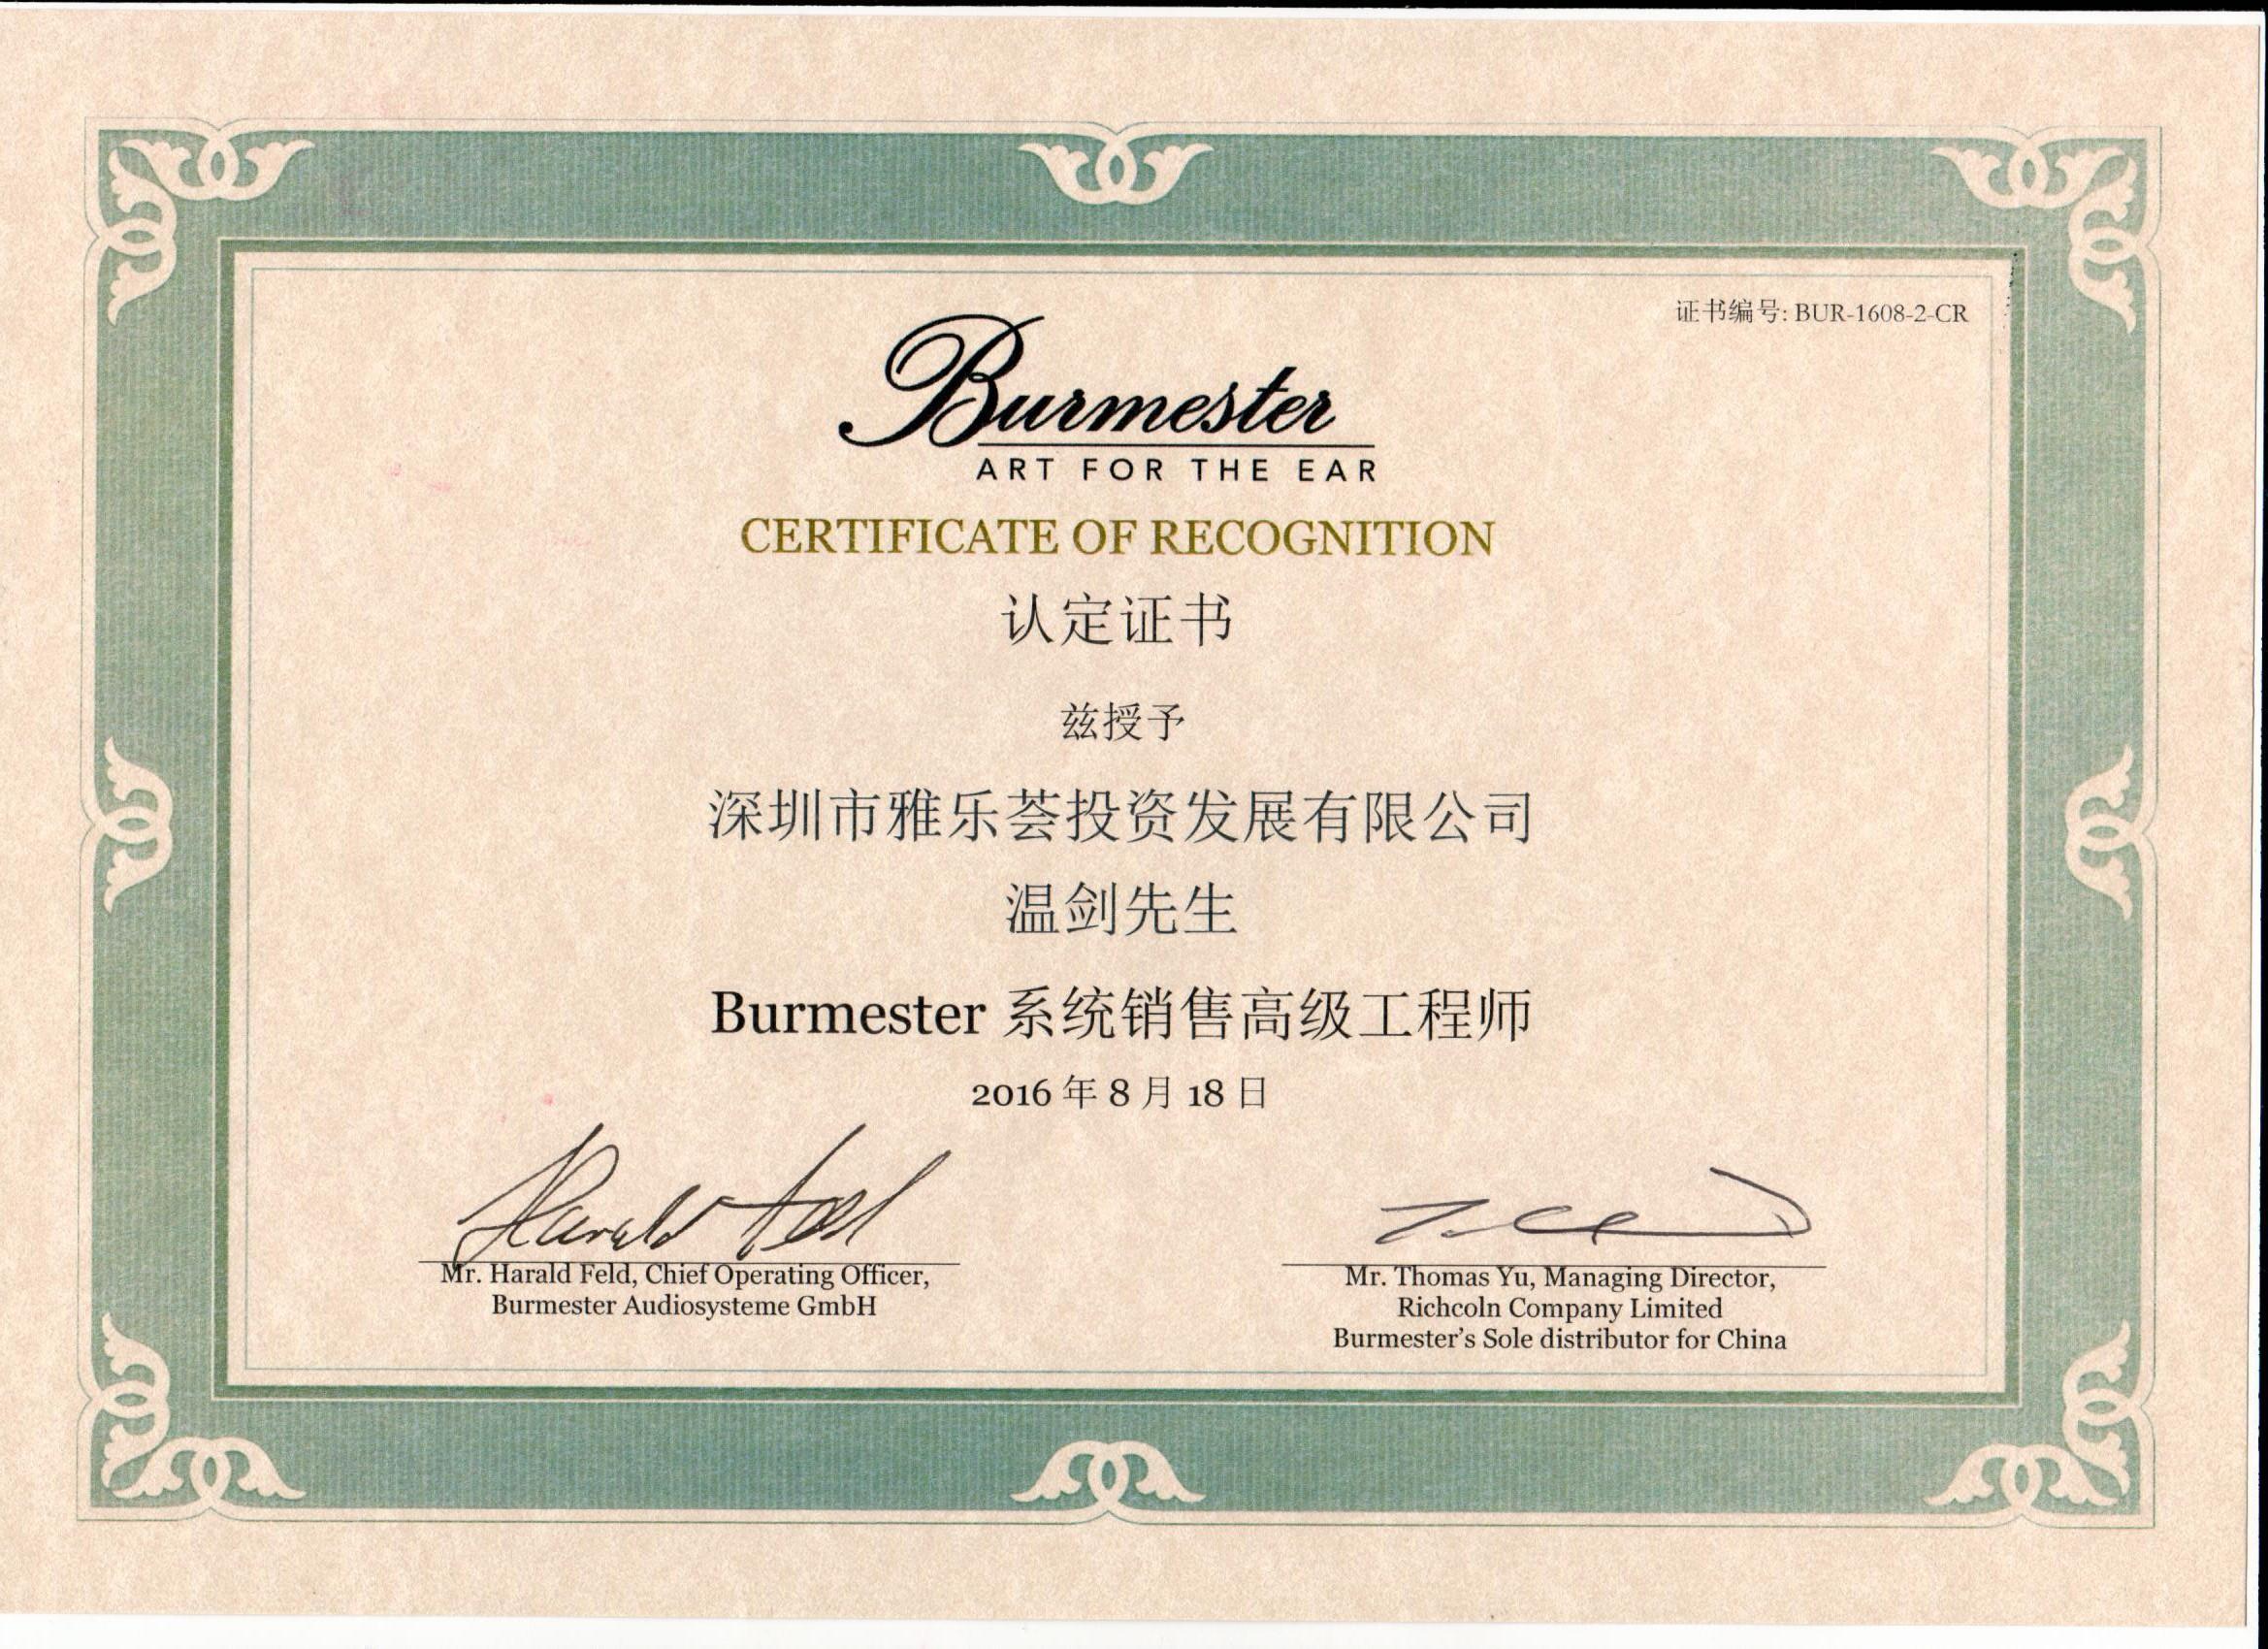 2016温剑被授予“Burmester系统销售高级工程师”称号